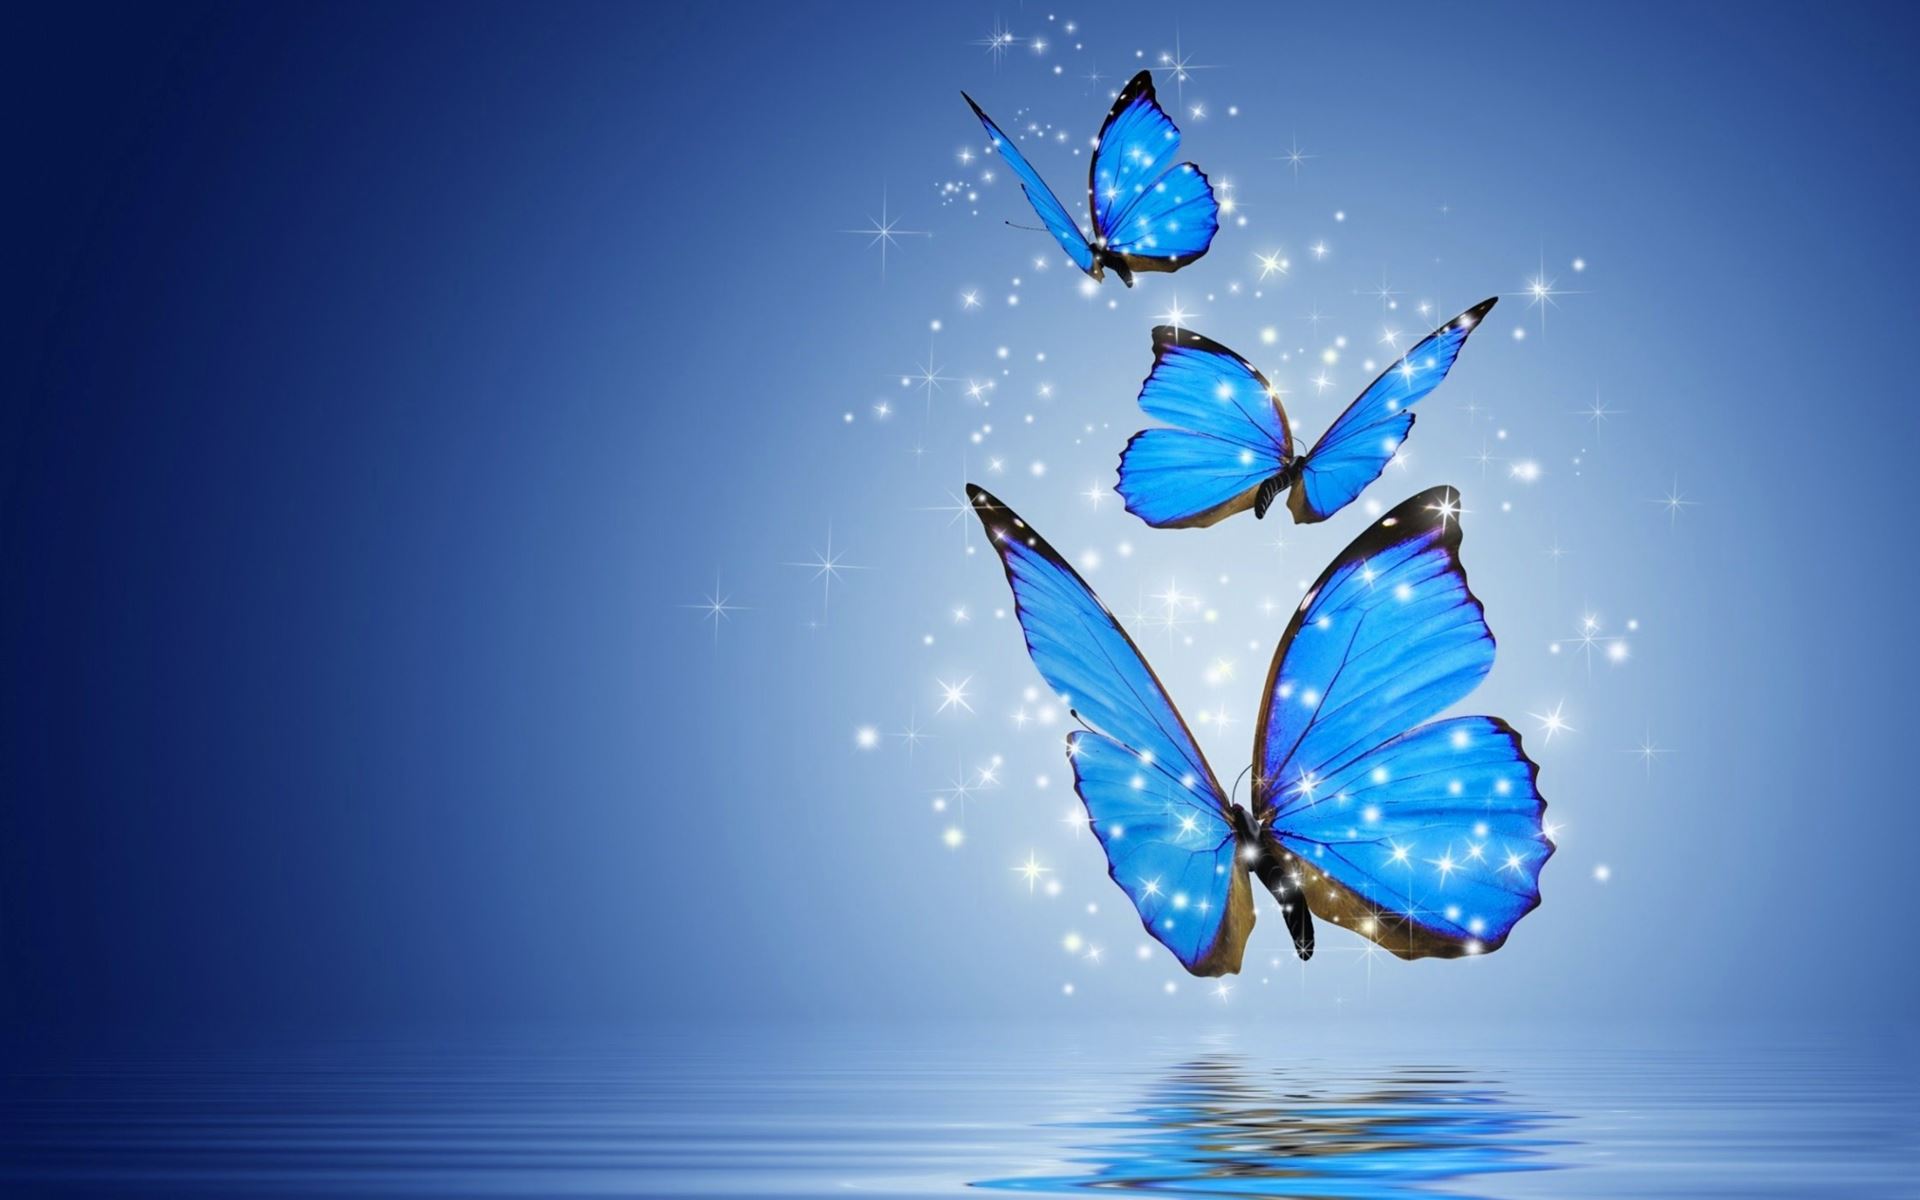 Hãy khám phá thế giới của bướm với những hình nền bướm đầy màu sắc và sinh động. Nhìn chúng bay rợp trời, bạn sẽ cảm thấy nhẹ nhàng và thoải mái hơn. Hãy để chúng truyền tải những cảm xúc tuyệt vời đến với bạn.